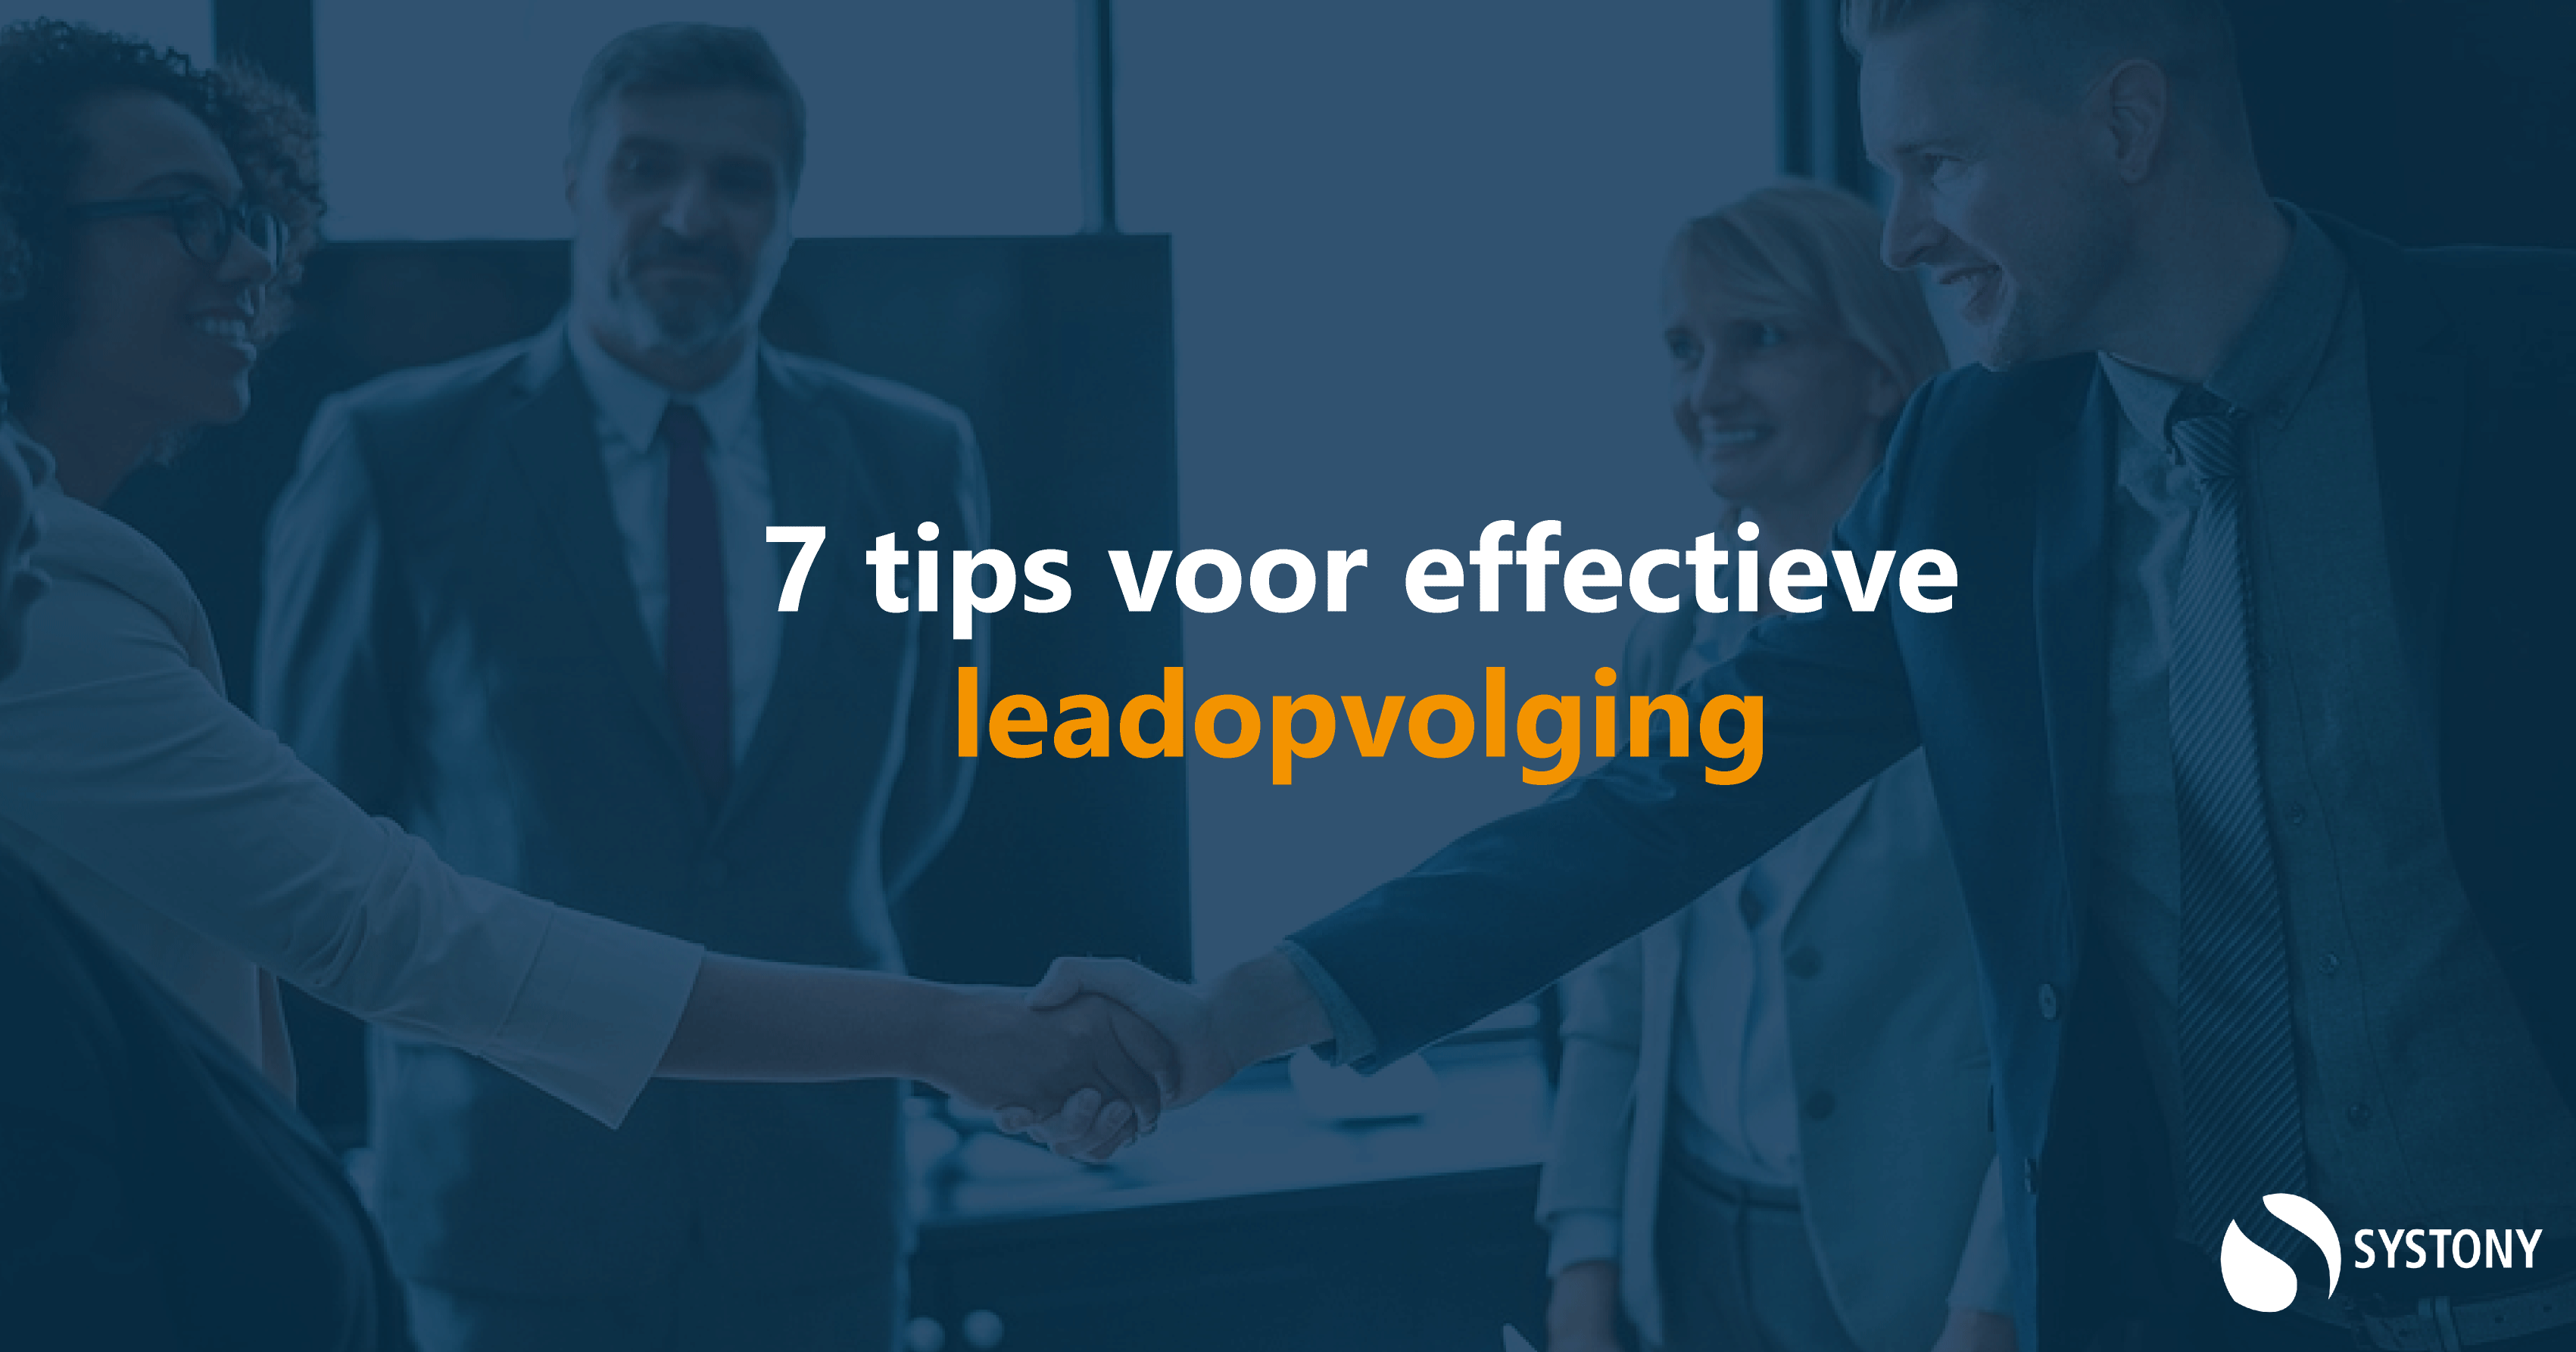 Effectieve leadopvolging is belangrijk voor het bereiken van een hogere omzet. Hier vind je tips voor het opvolgen van leads.